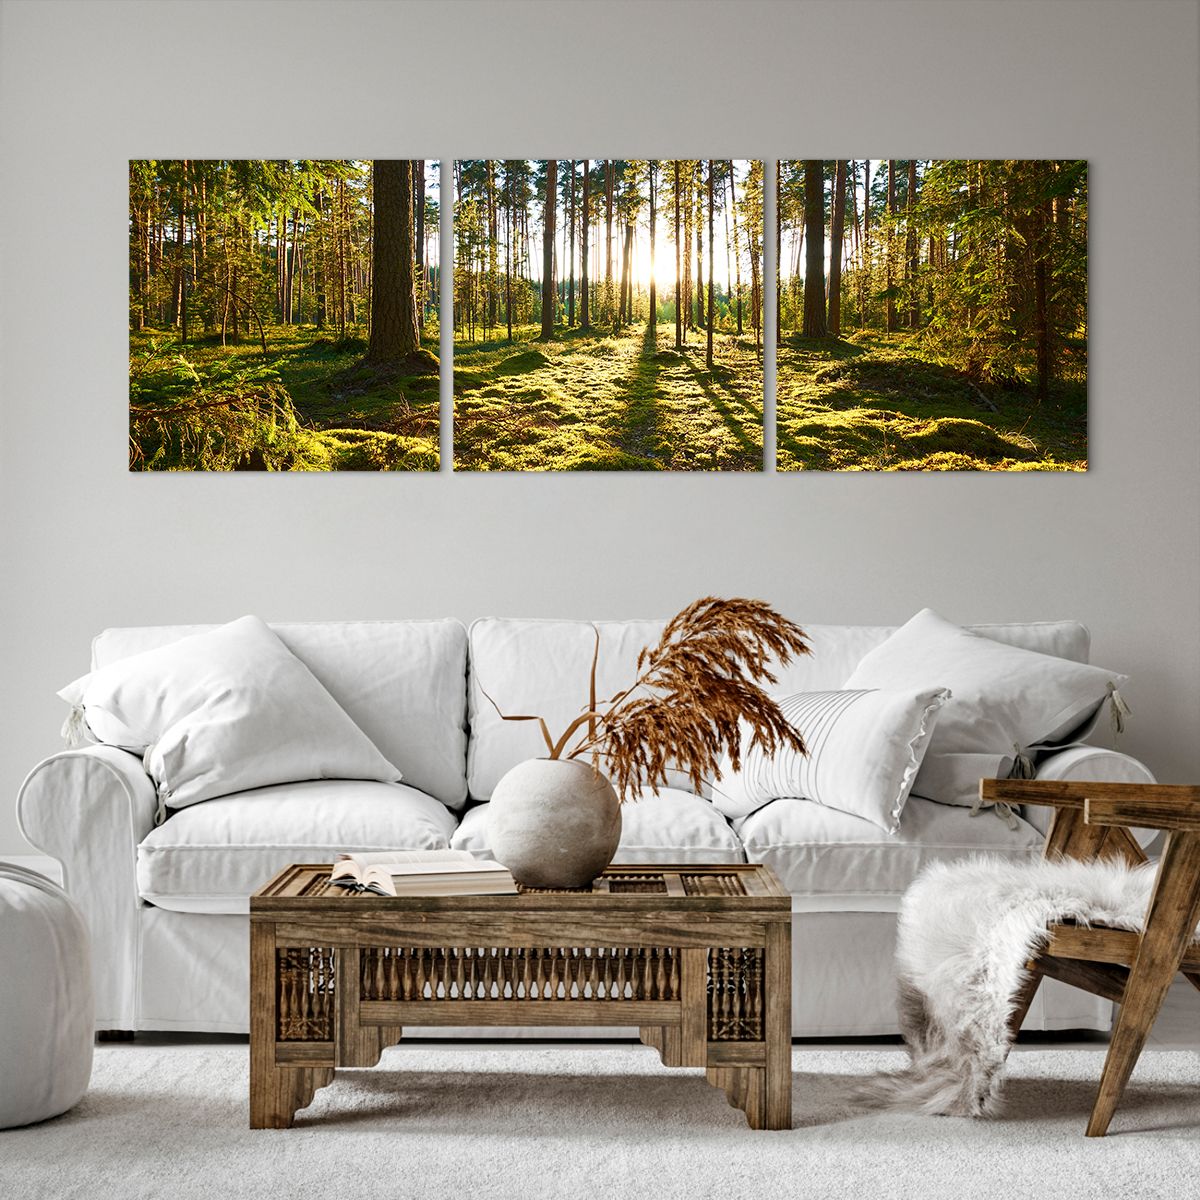 Bild auf Leinwand Landschaft, Bild auf Leinwand Wald, Bild auf Leinwand Natur, Bild auf Leinwand Sonnenstrahlen, Bild auf Leinwand Bäume